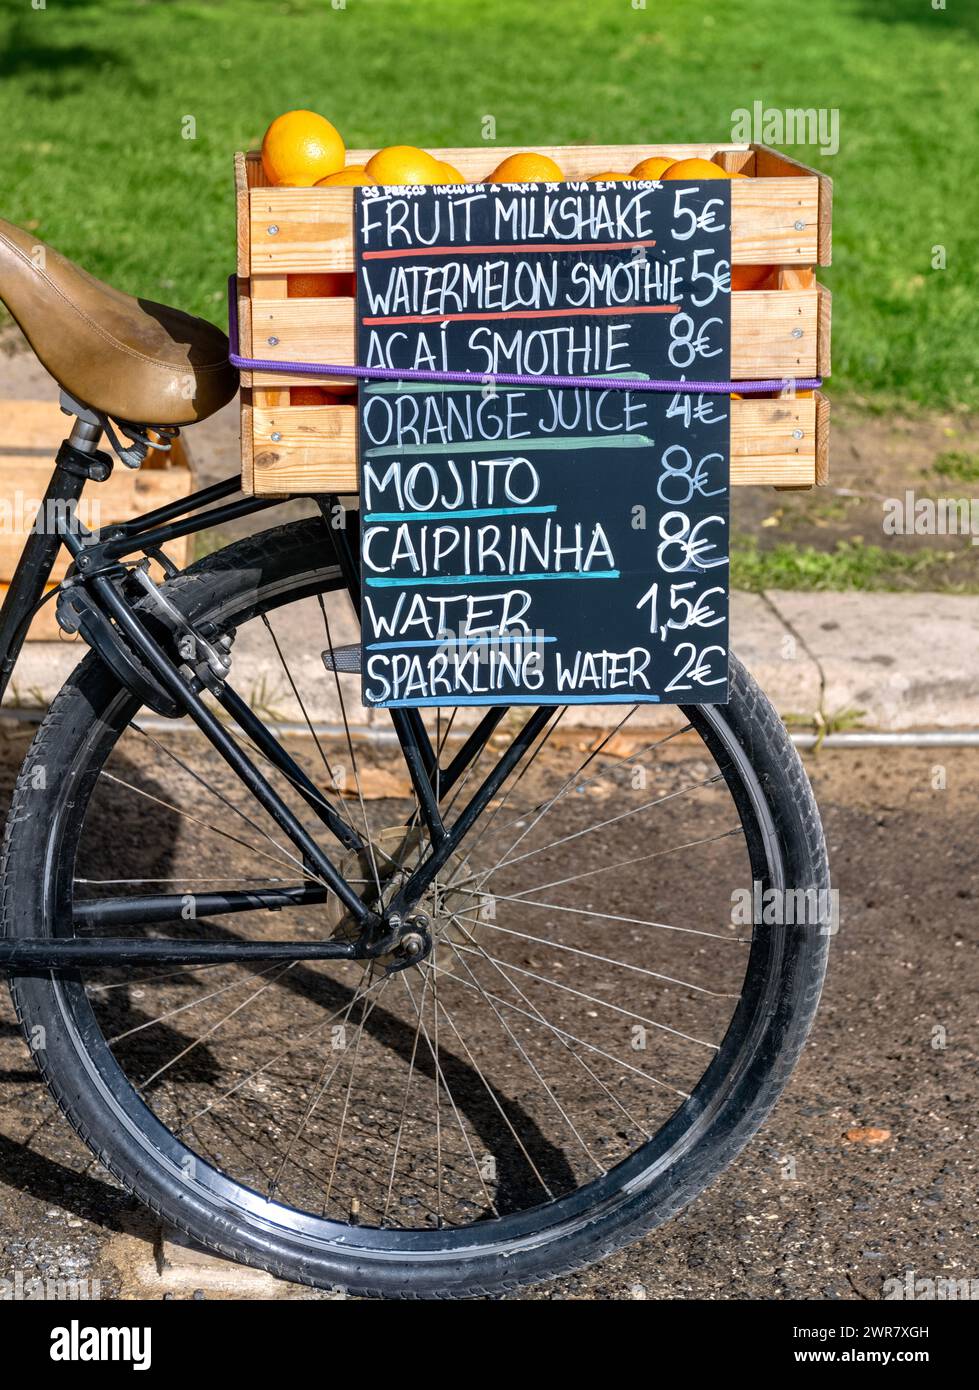 Signe sur le dos de vélo annonçant des boissons gazeuses, smoothies et mojitos, Lisbonne, Portugal Banque D'Images